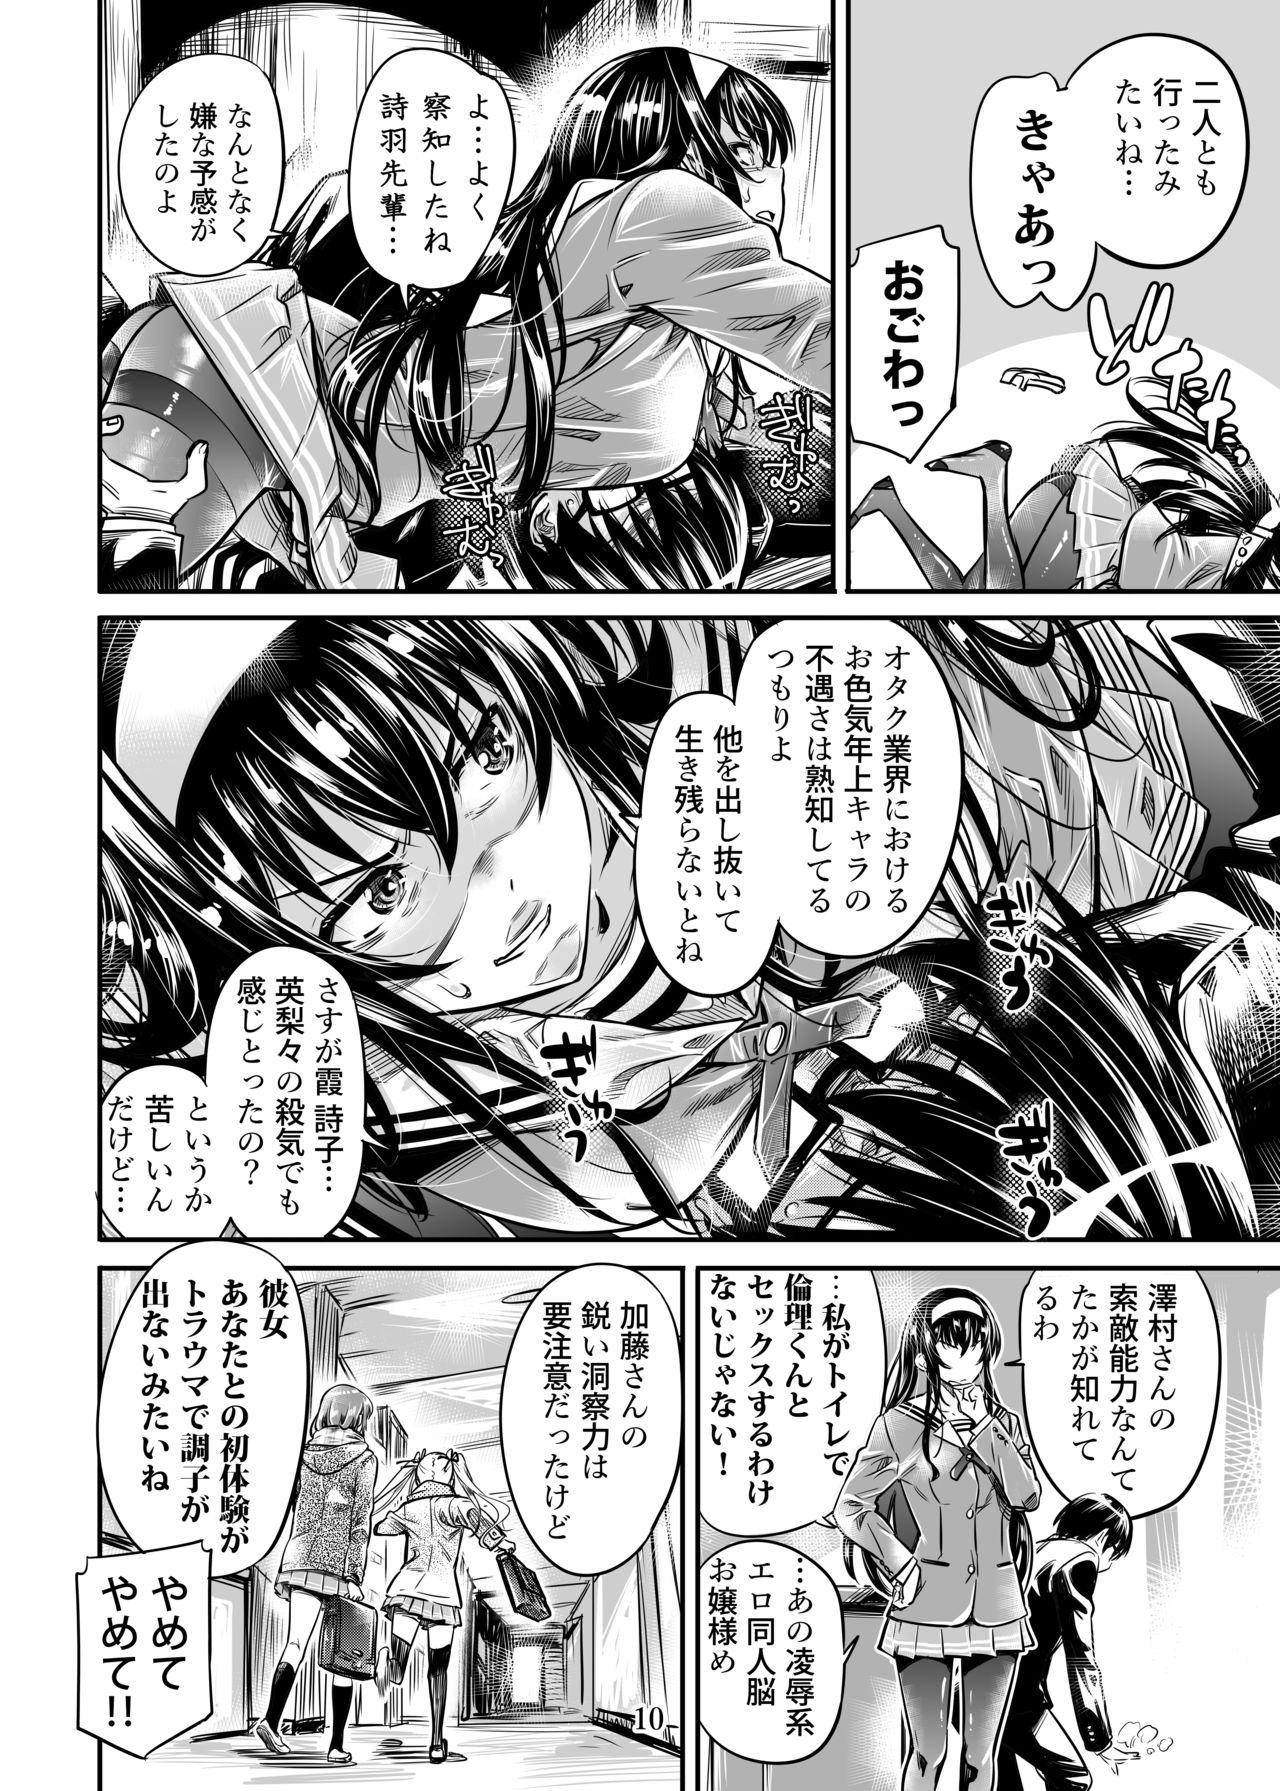 Saenai Heroine Series Vol. 5 Saenai Senpai no Sakarikata 8